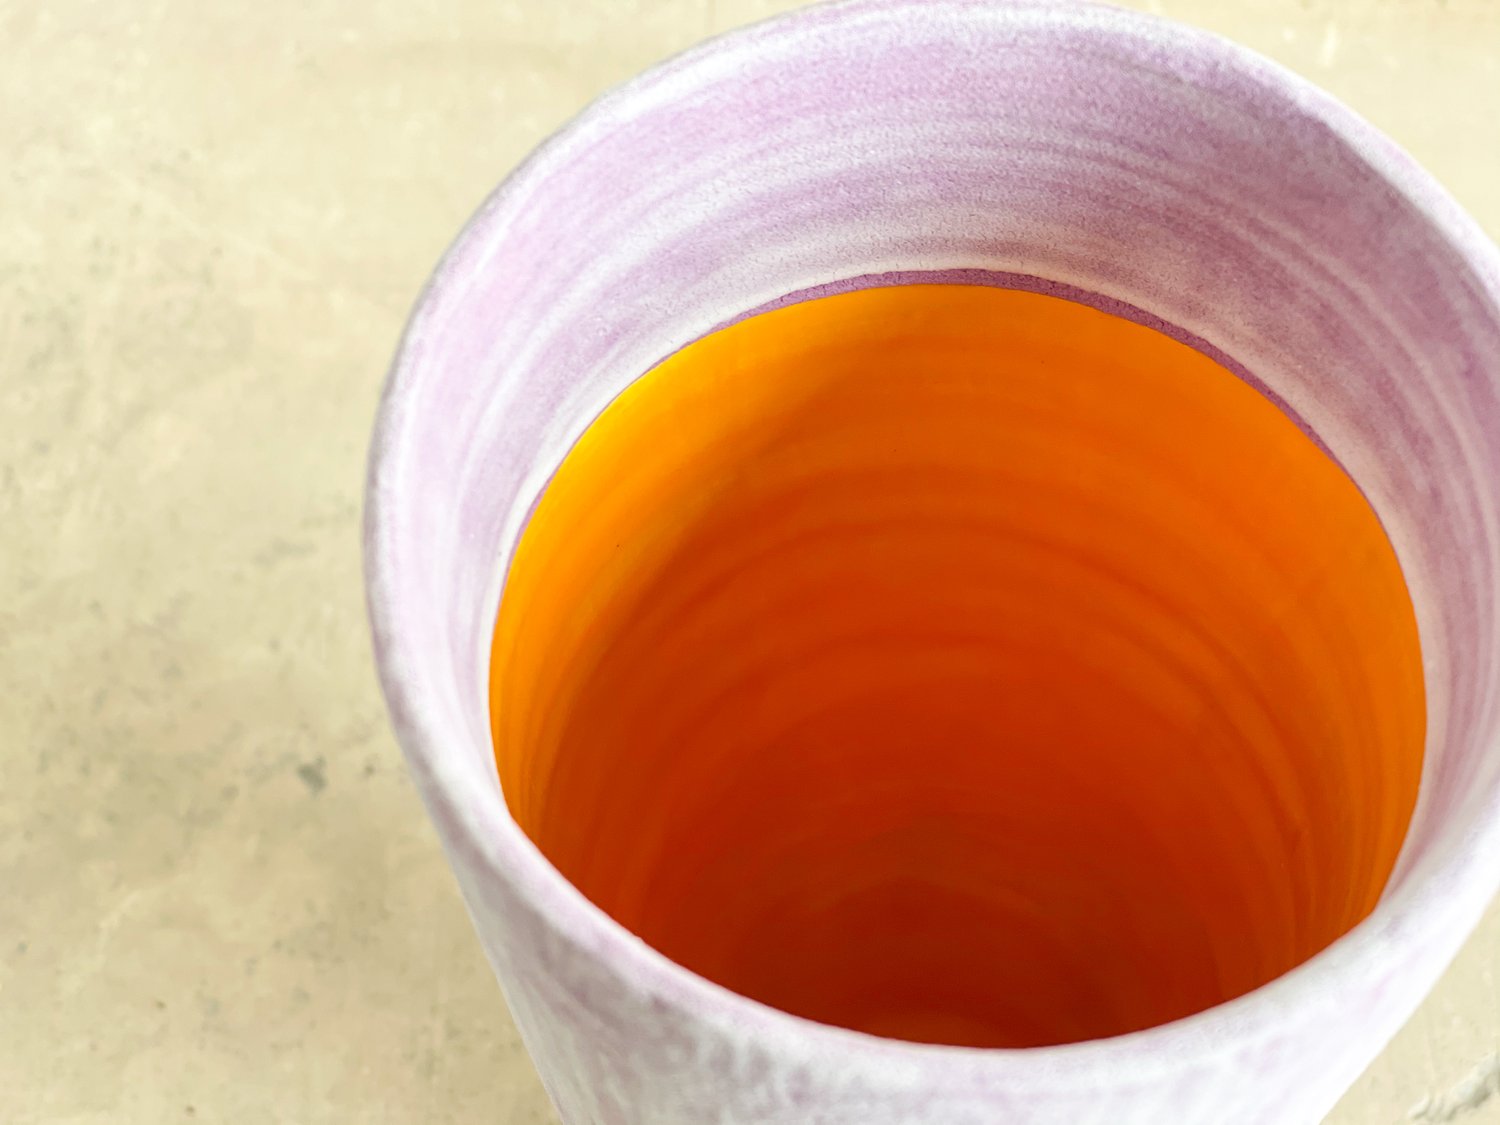 Image of Violet Frost Cylinder Vase